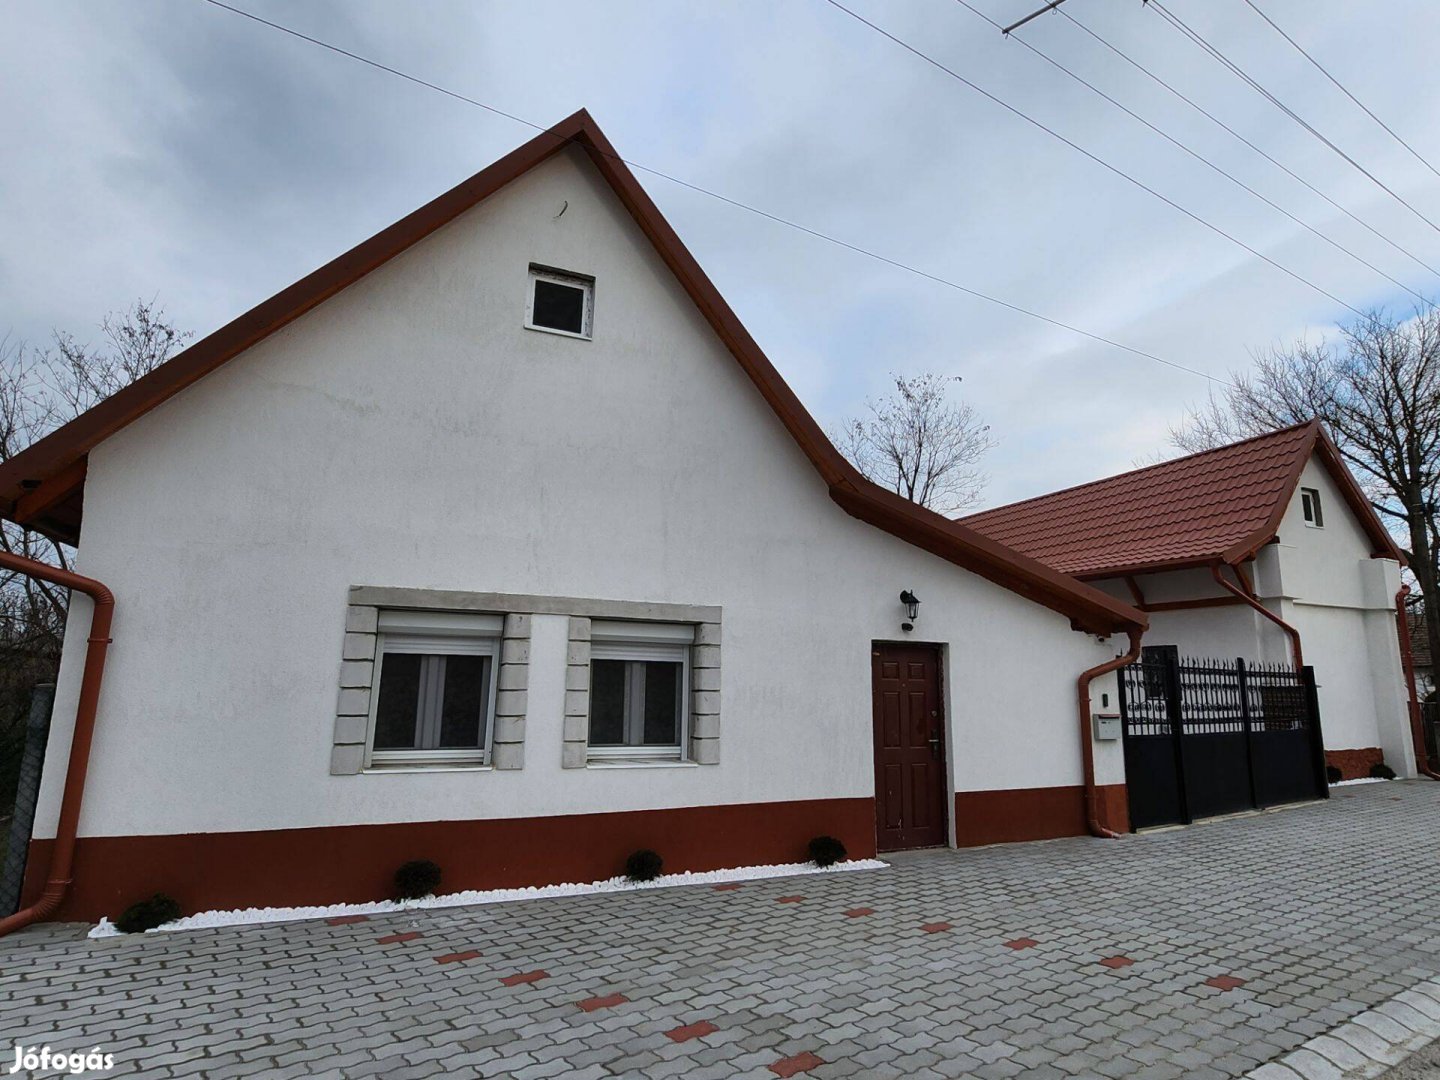 Budapest,Monor,Gyömrő mellett Vasadon 300 m2 új építésű családi ház